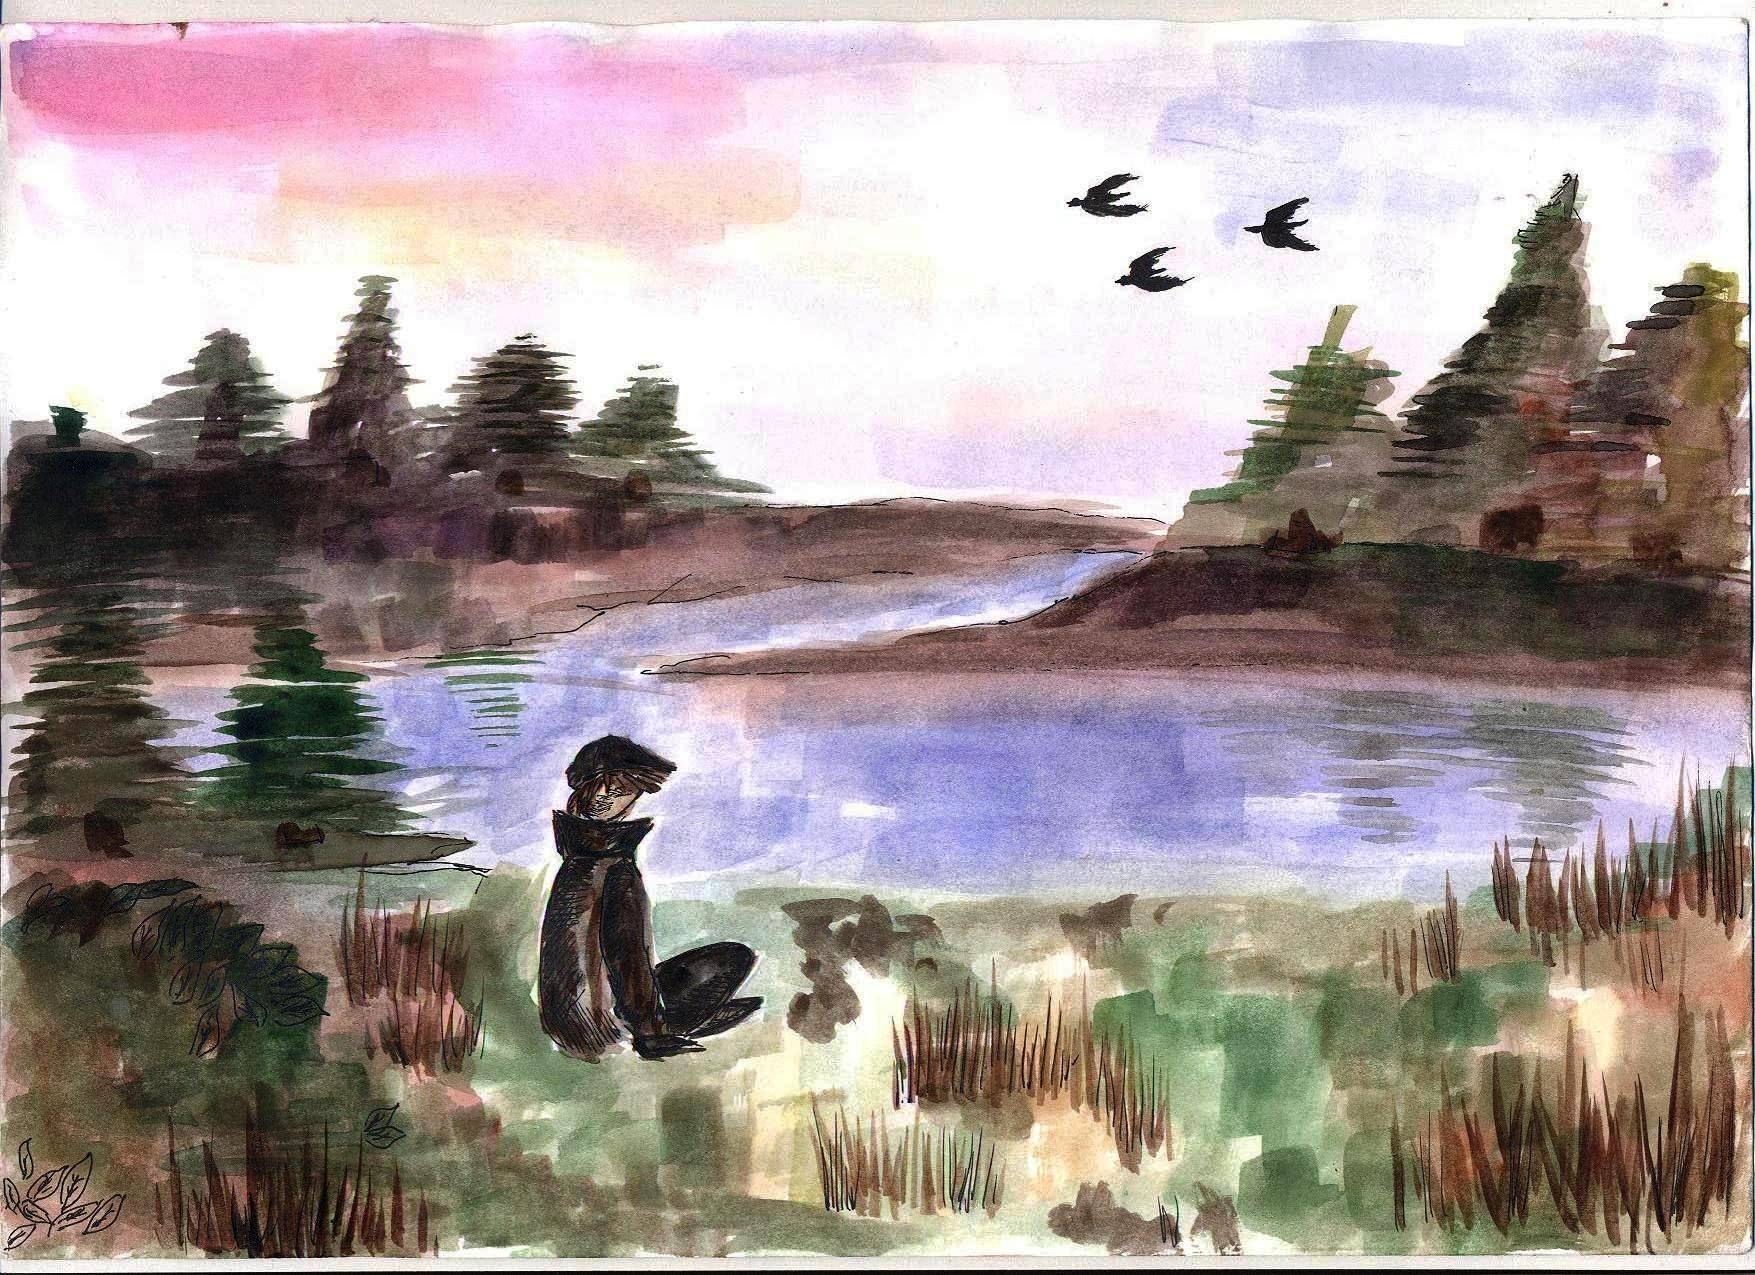 Иллюстрация васюткино озеро 5 класс рисунок. Васюткино озеро Астафьева. Иллюстрация к рассказу Астафьева Васюткино оз. В П Астафьев Васюткино озеро иллюстрации к рассказу. Детские иллюстрации к рассказу Васюткино озеро.